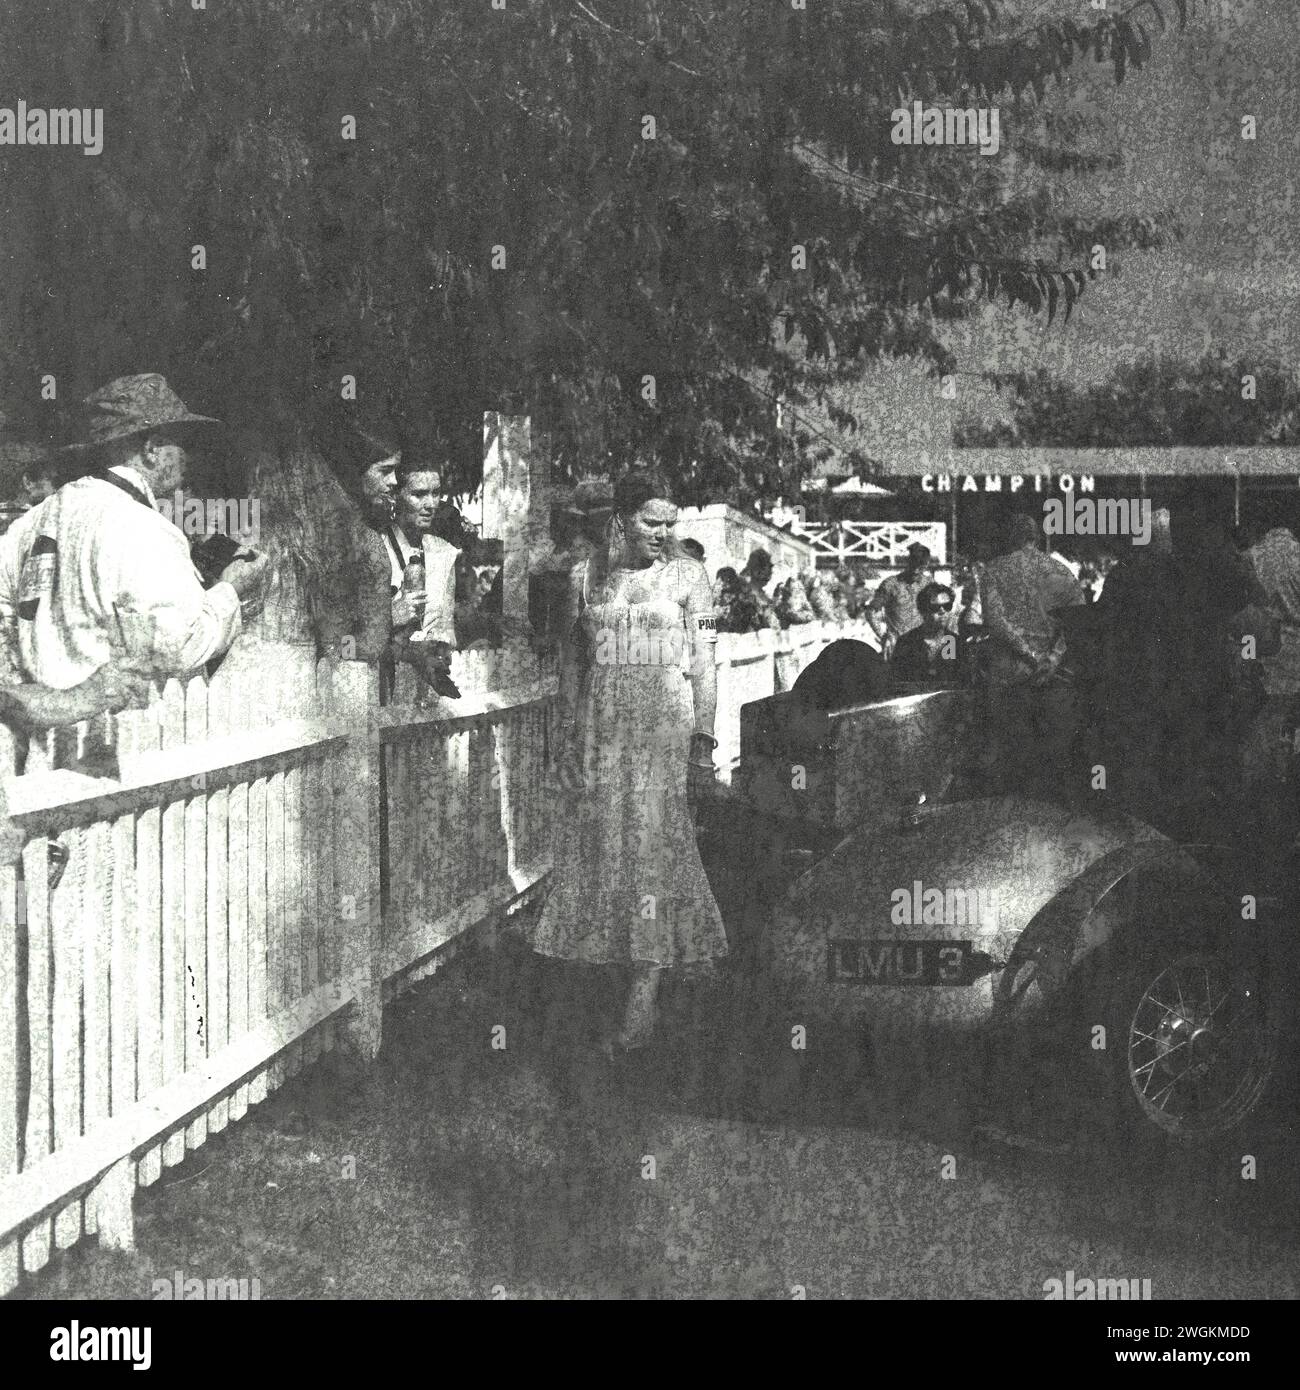 Goodwood Revival 2023 - immagini scattate su un vecchio film Rolleiflex su Kodak, scaduto nel 1985. Foto Stock